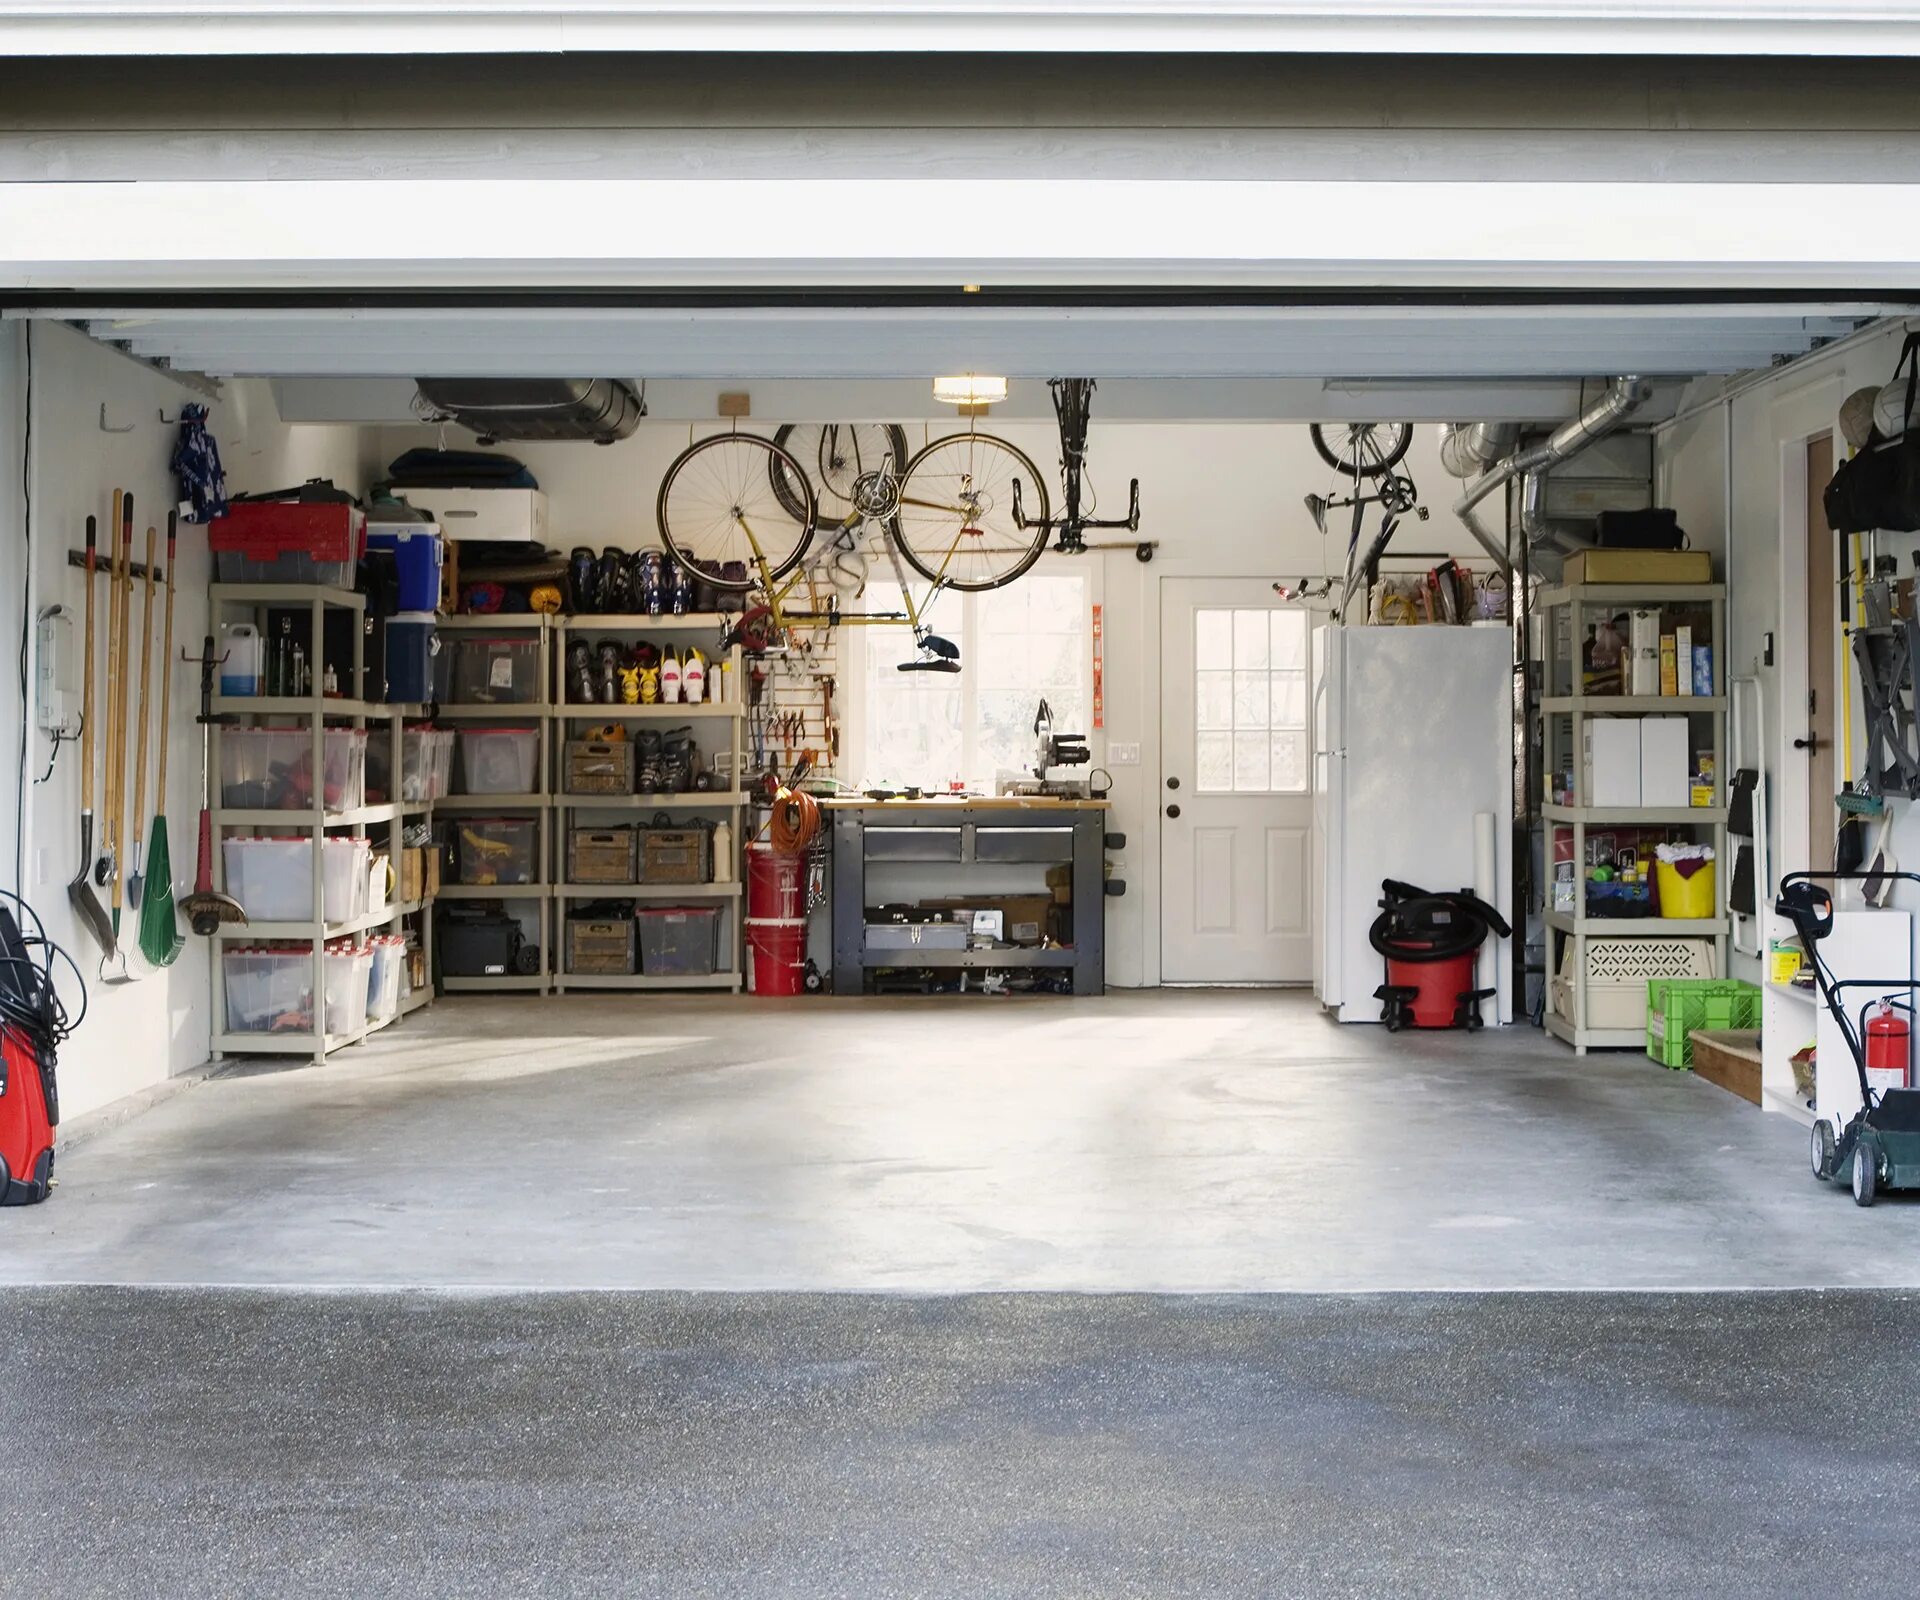 Гараж внутри. Интерьер гаража. Дизайнерская отделка гаража. Красивый гараж.